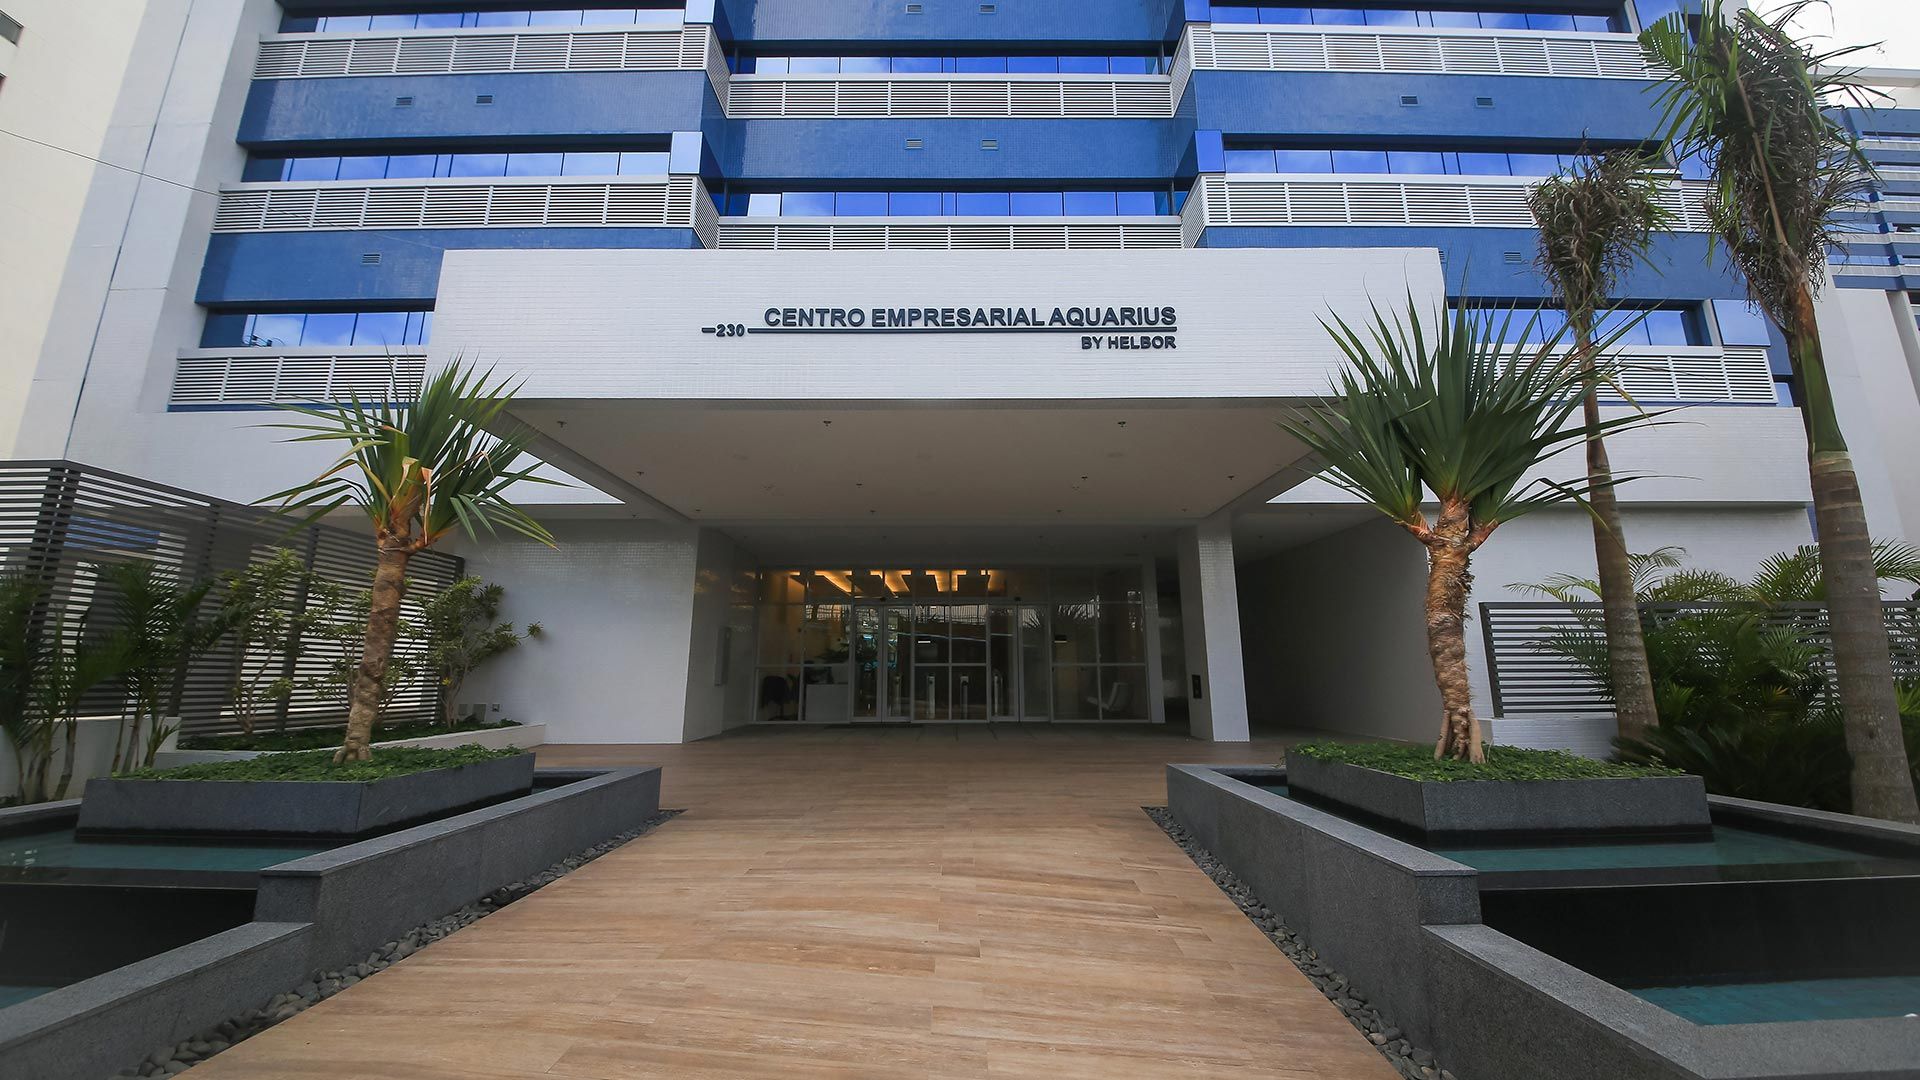 Centro Empresarial Aquarius by Helbor